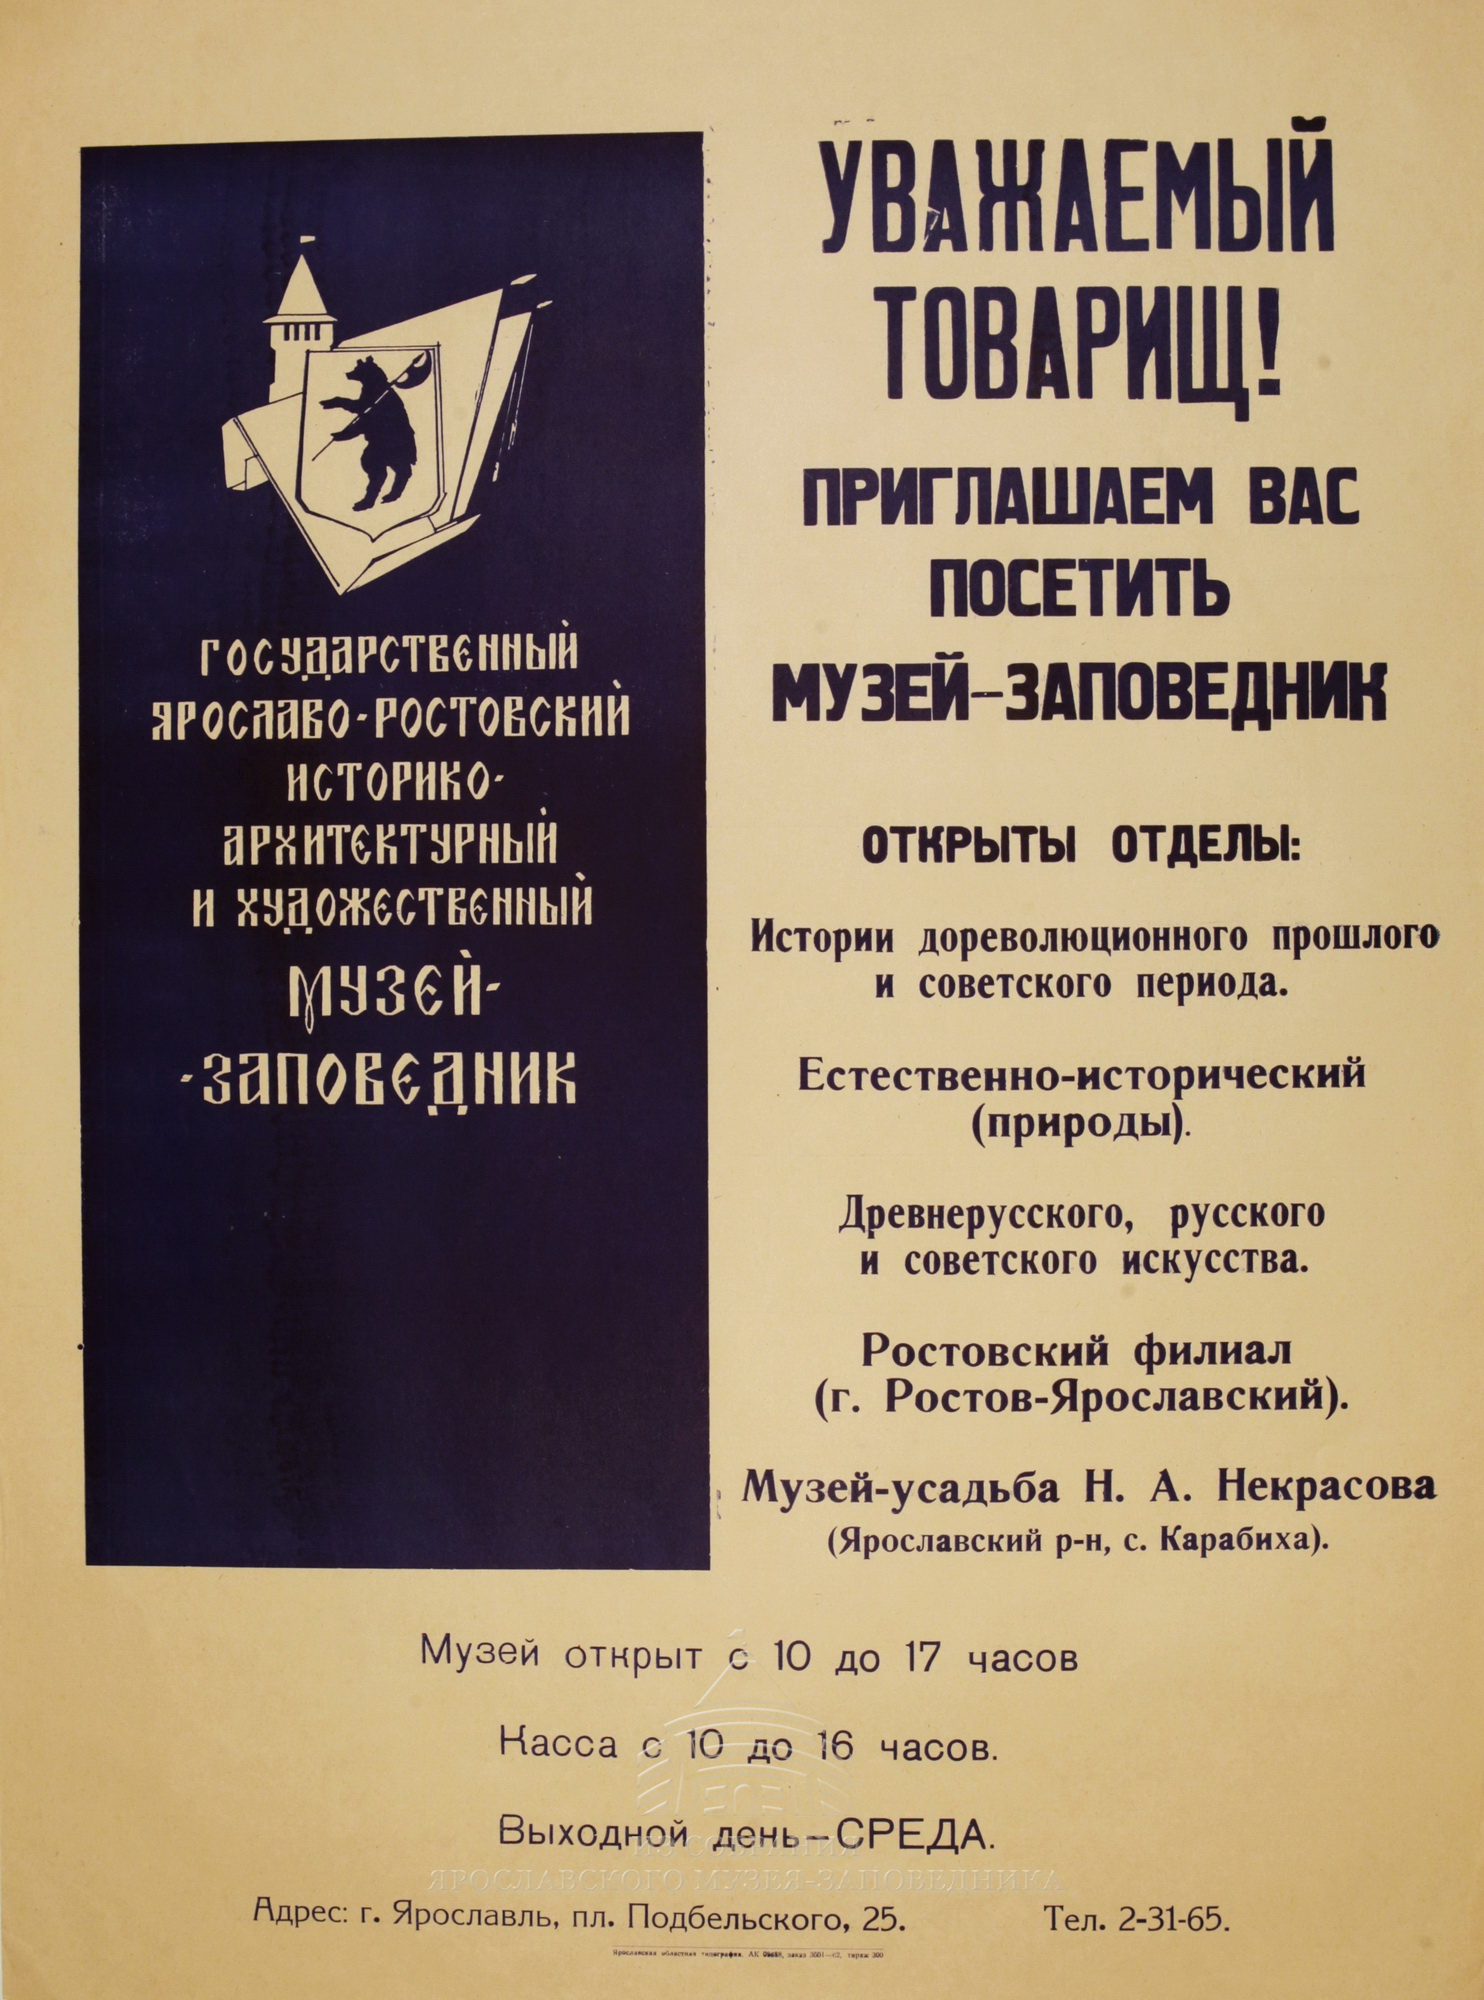 Афиша Ярославо-Ростовского музея-заповедника. 1962 г.